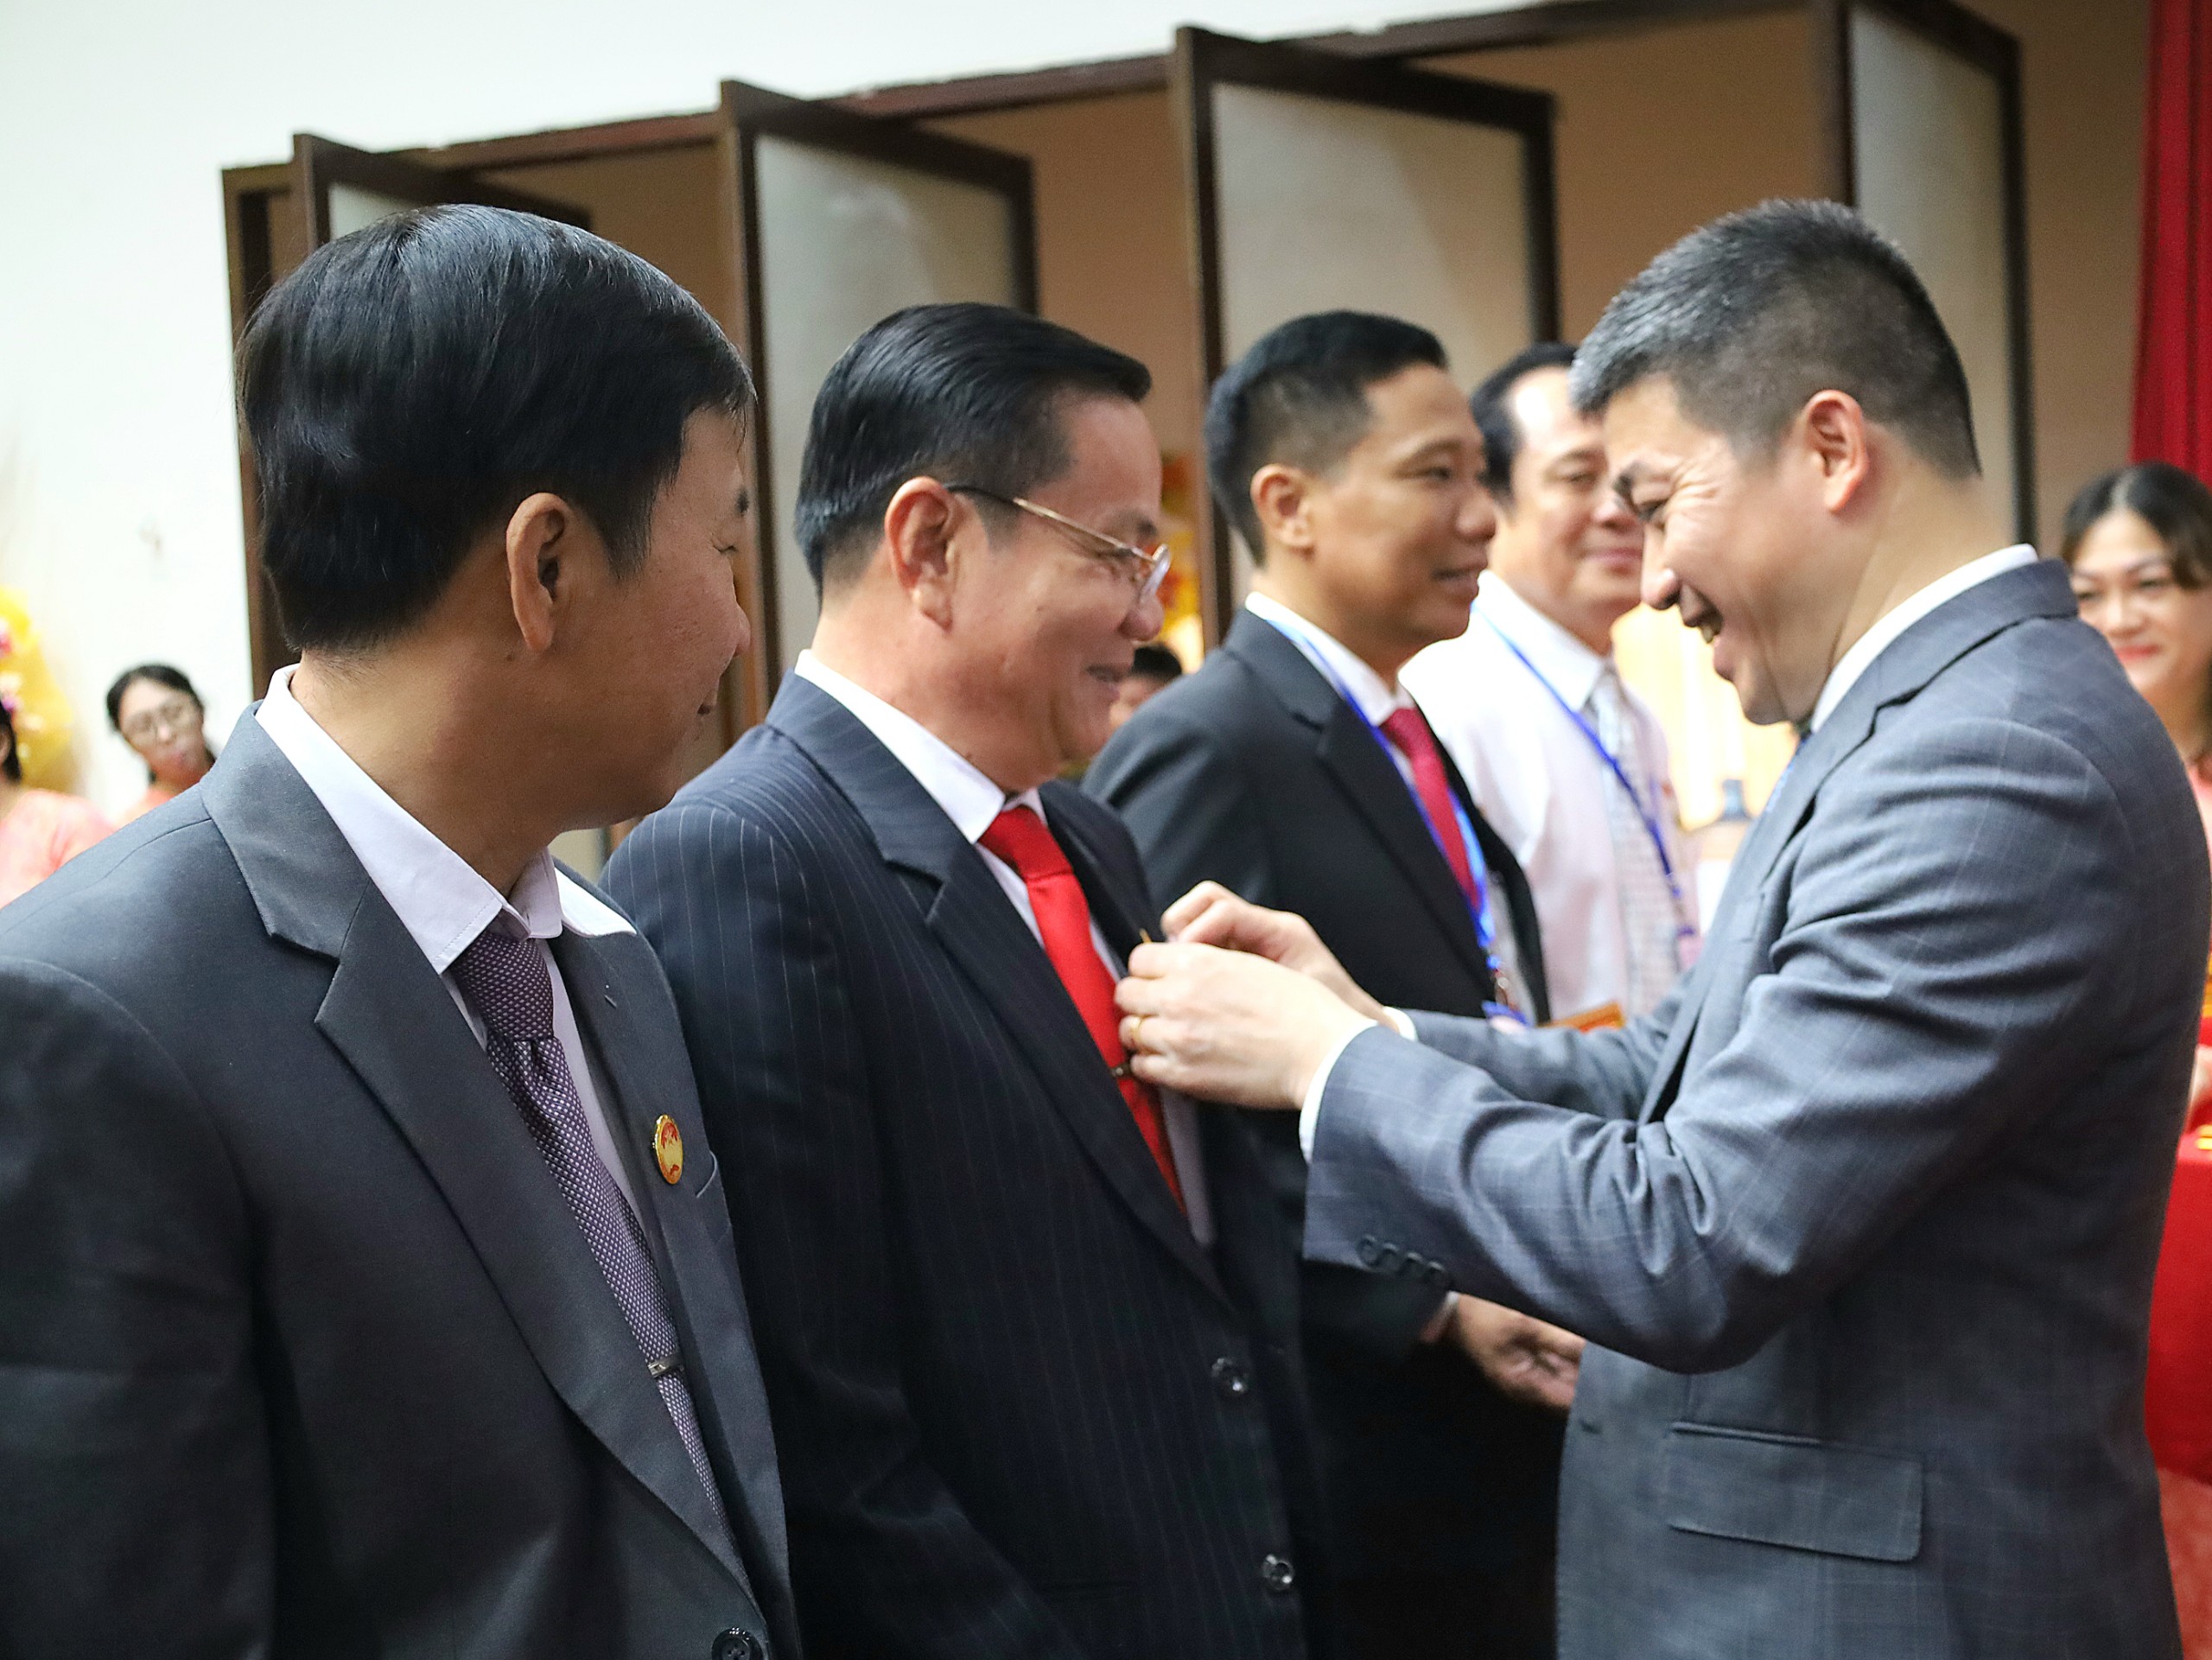 Ông Phan Anh Sơn - Bí thư đảng Đoàn, Chủ tịch Liên hiệp các tổ chức hữu nghị Việt Nam trao tặng Kỷ niệm chương “Vì hòa bình, hữu nghị giữa các dân tộc” cho các cá nhân.